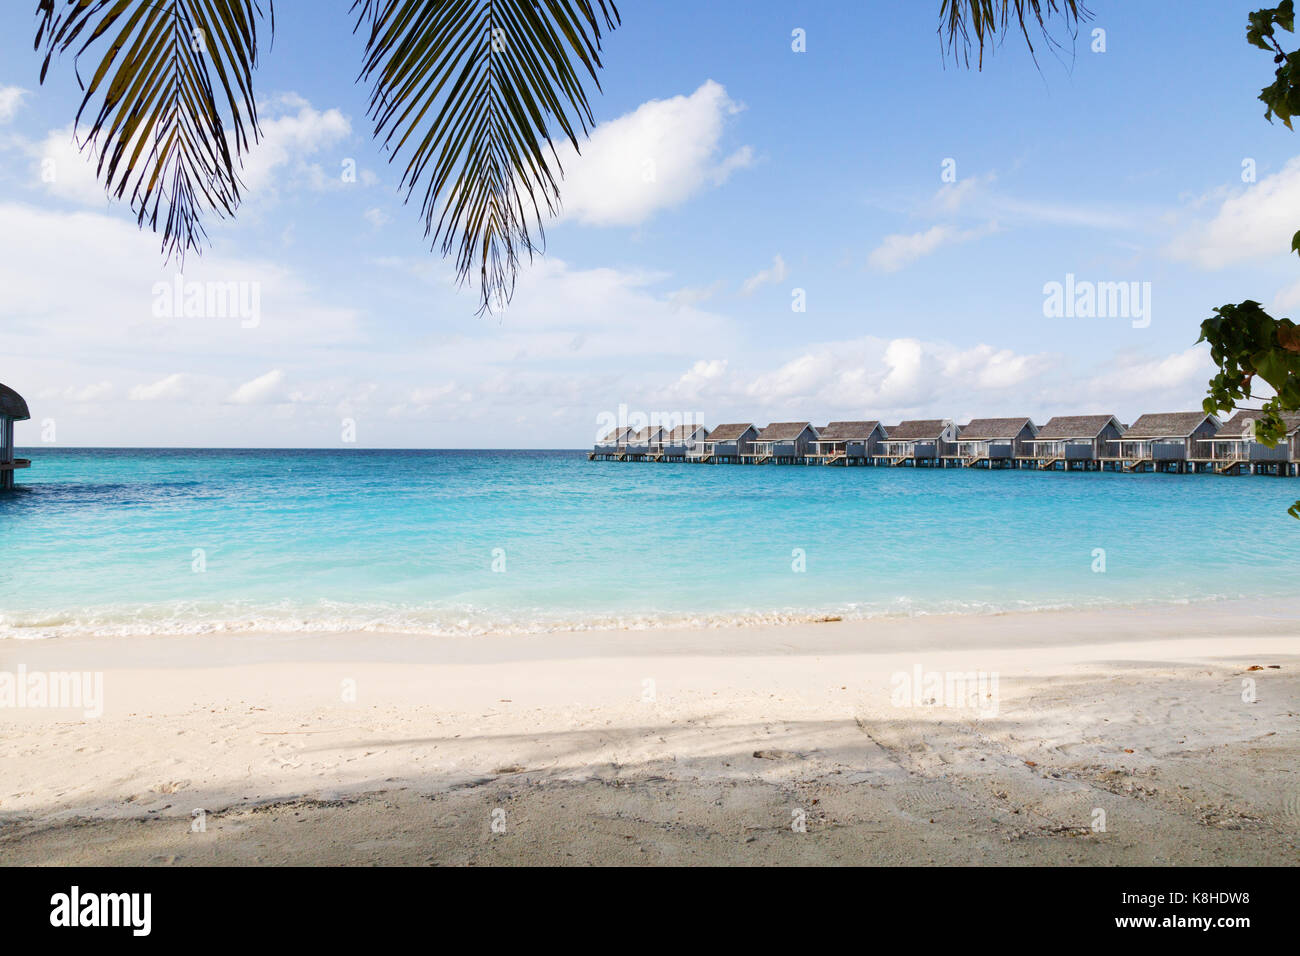 Maldives Resort - Beach villas sur l'île de Kuramathi, les Maldives, l'Asie Banque D'Images